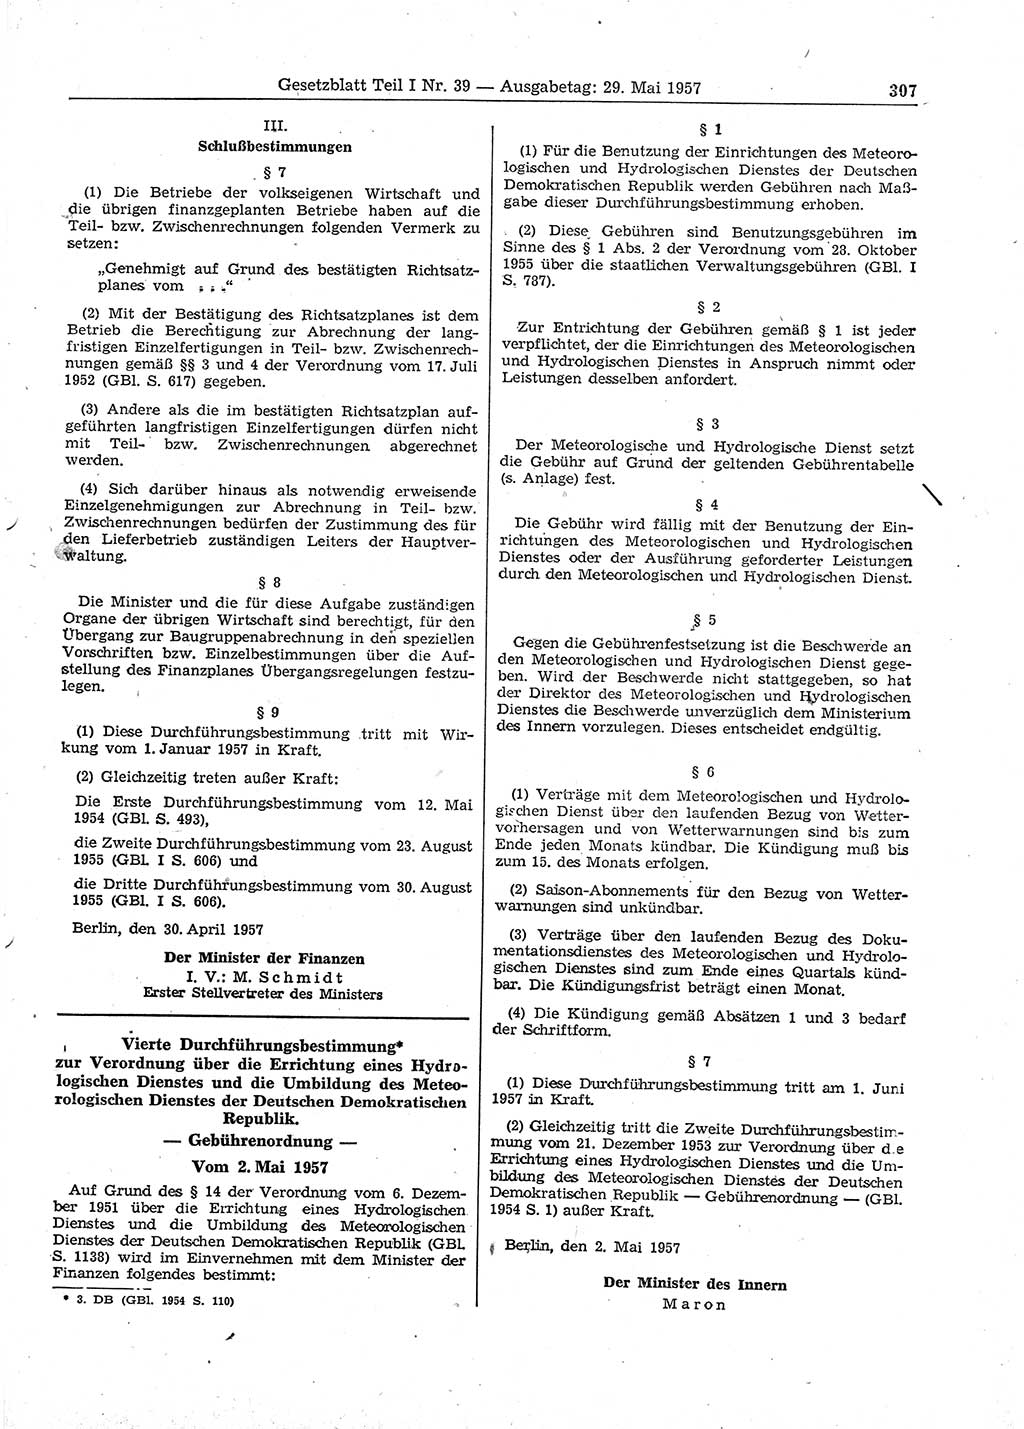 Gesetzblatt (GBl.) der Deutschen Demokratischen Republik (DDR) Teil Ⅰ 1957, Seite 307 (GBl. DDR Ⅰ 1957, S. 307)